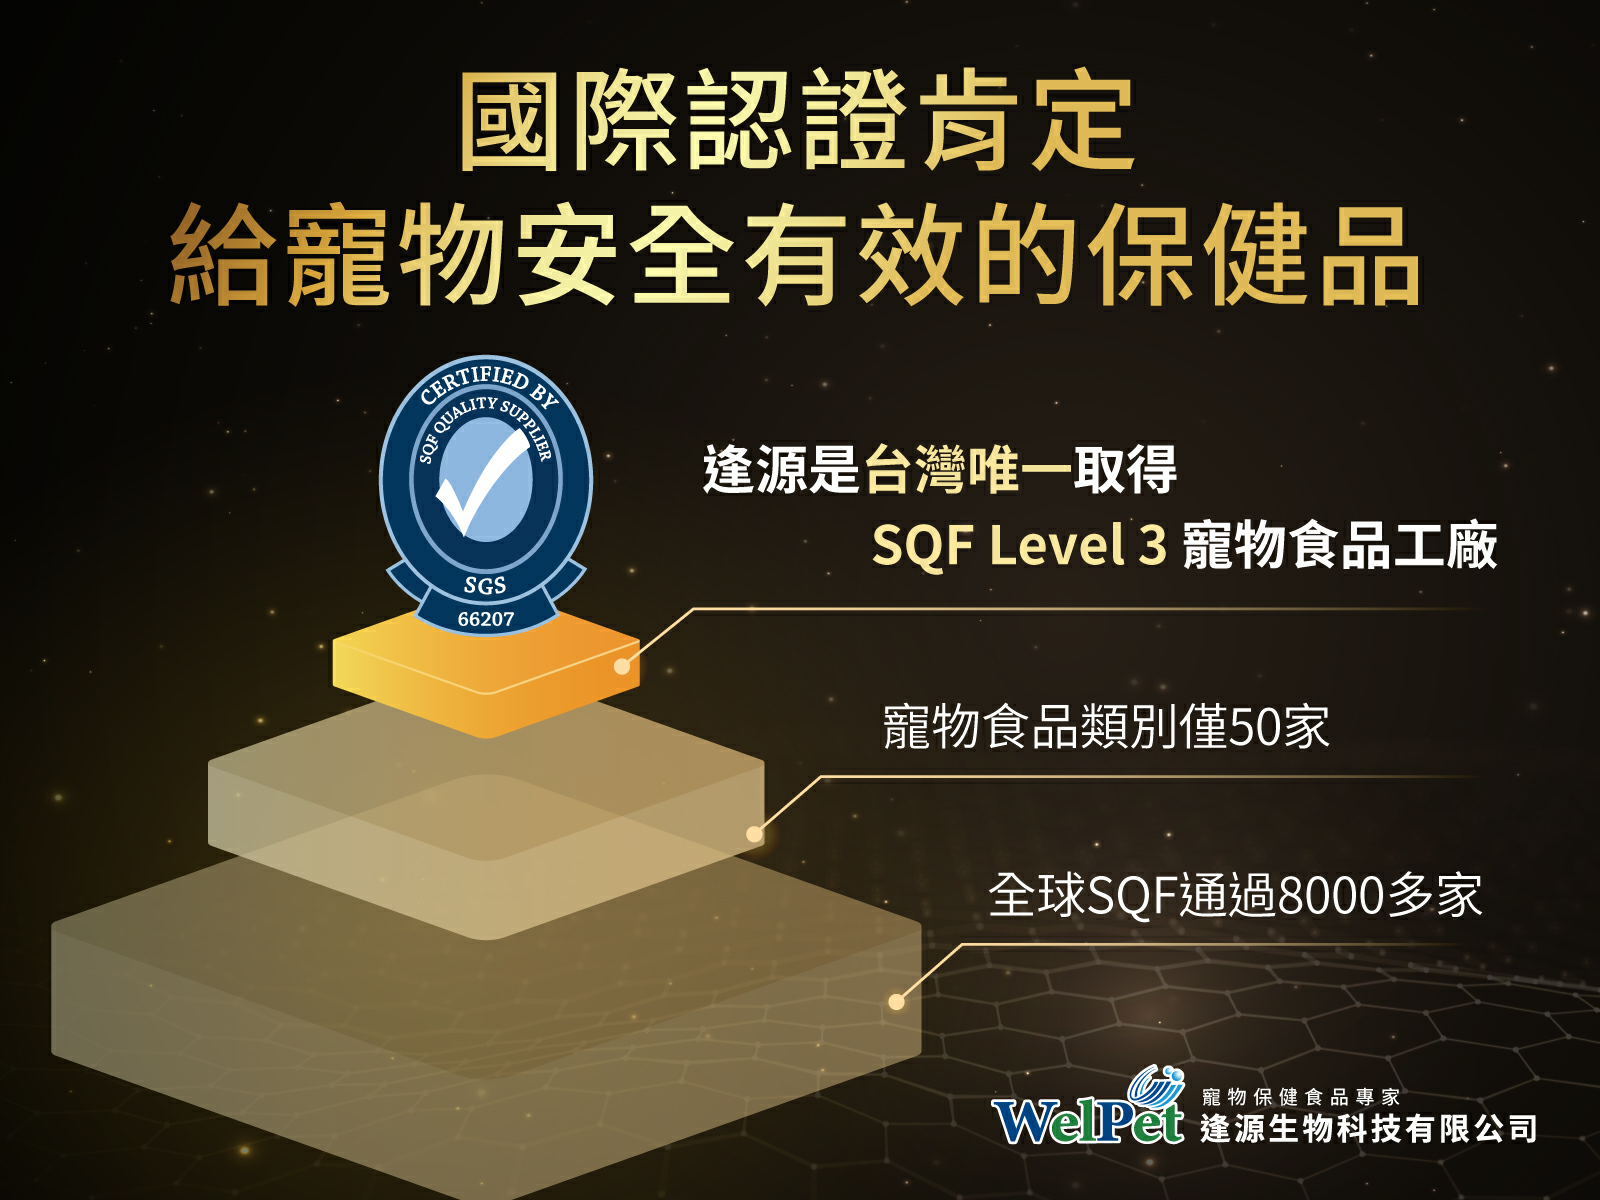 逢源是台灣唯一取得SQF Level3 寵物食品工廠